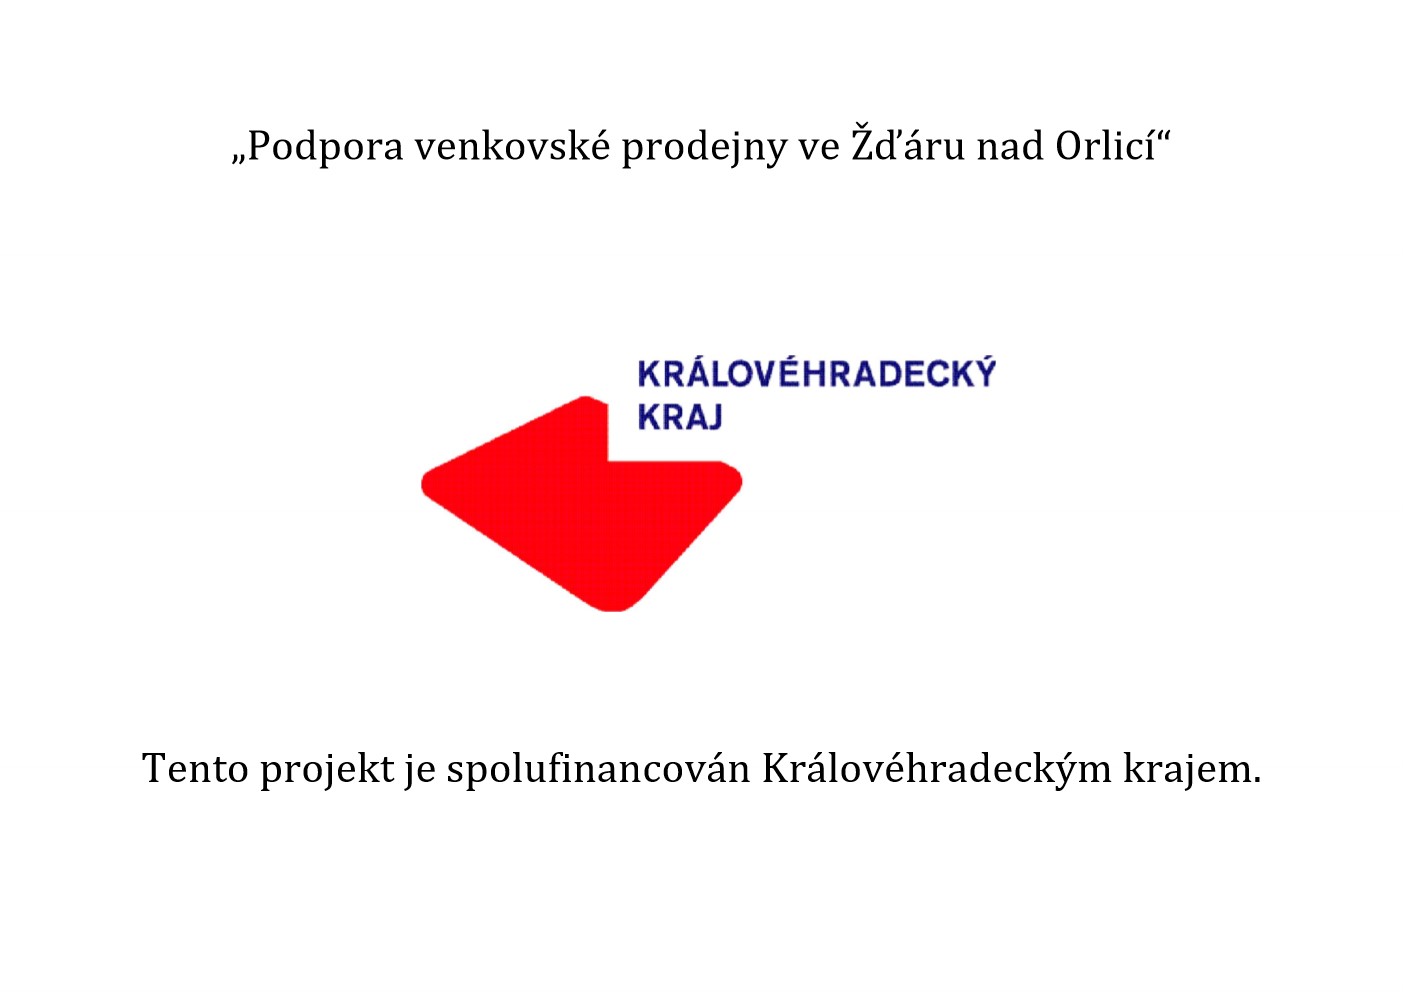 Povinná publicita projektu Žďár nad Orlicí - venkovská prodejna.jpg